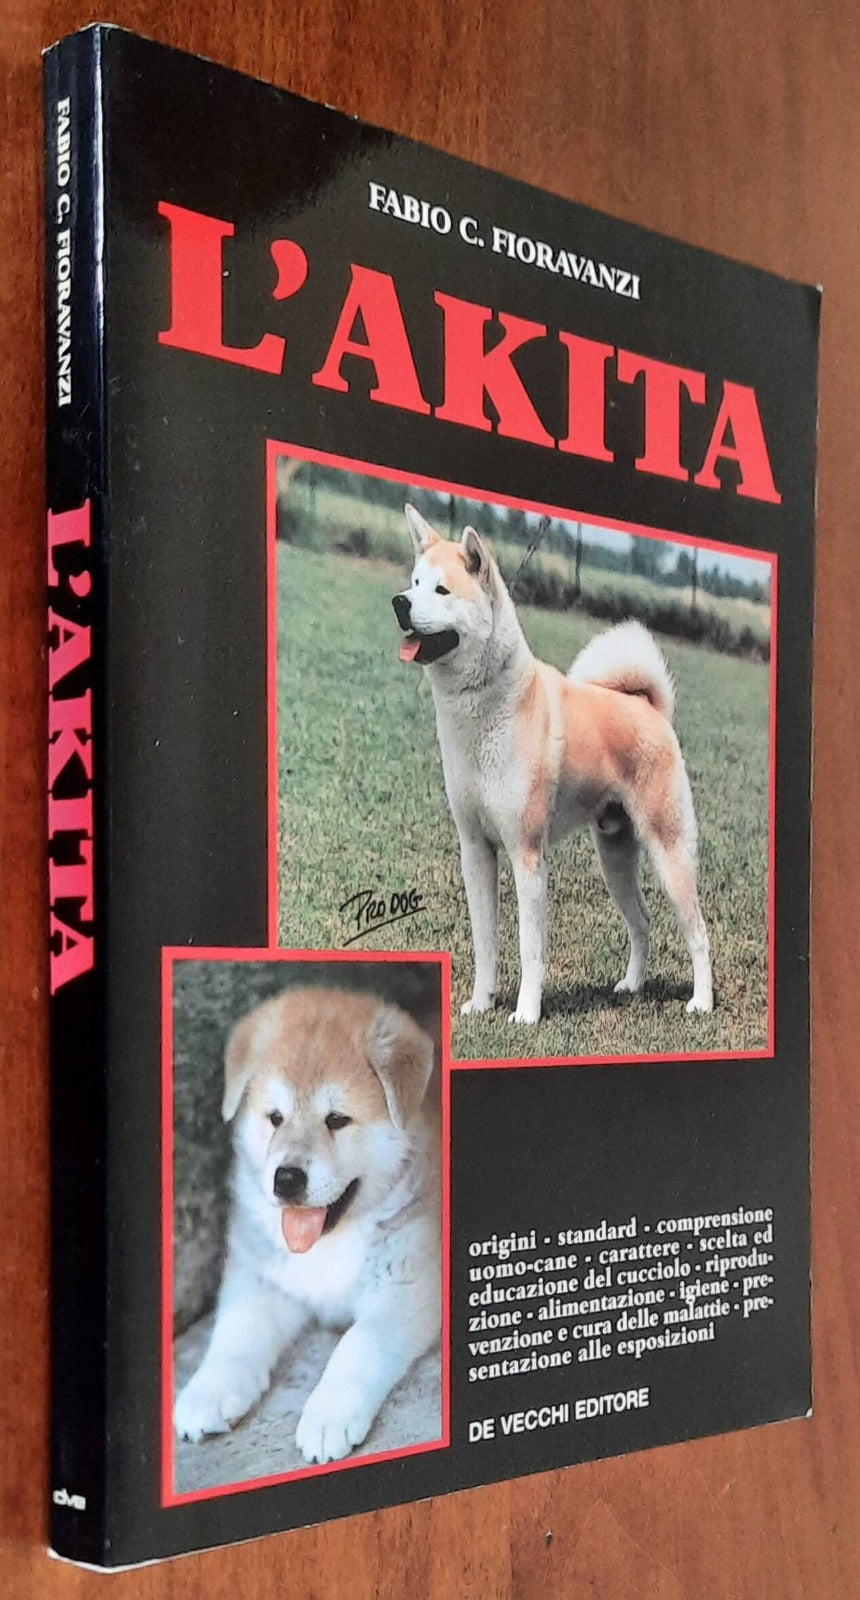 L’akita - Fabio C. Fioravanzi - De Vecchi Editore - 1993